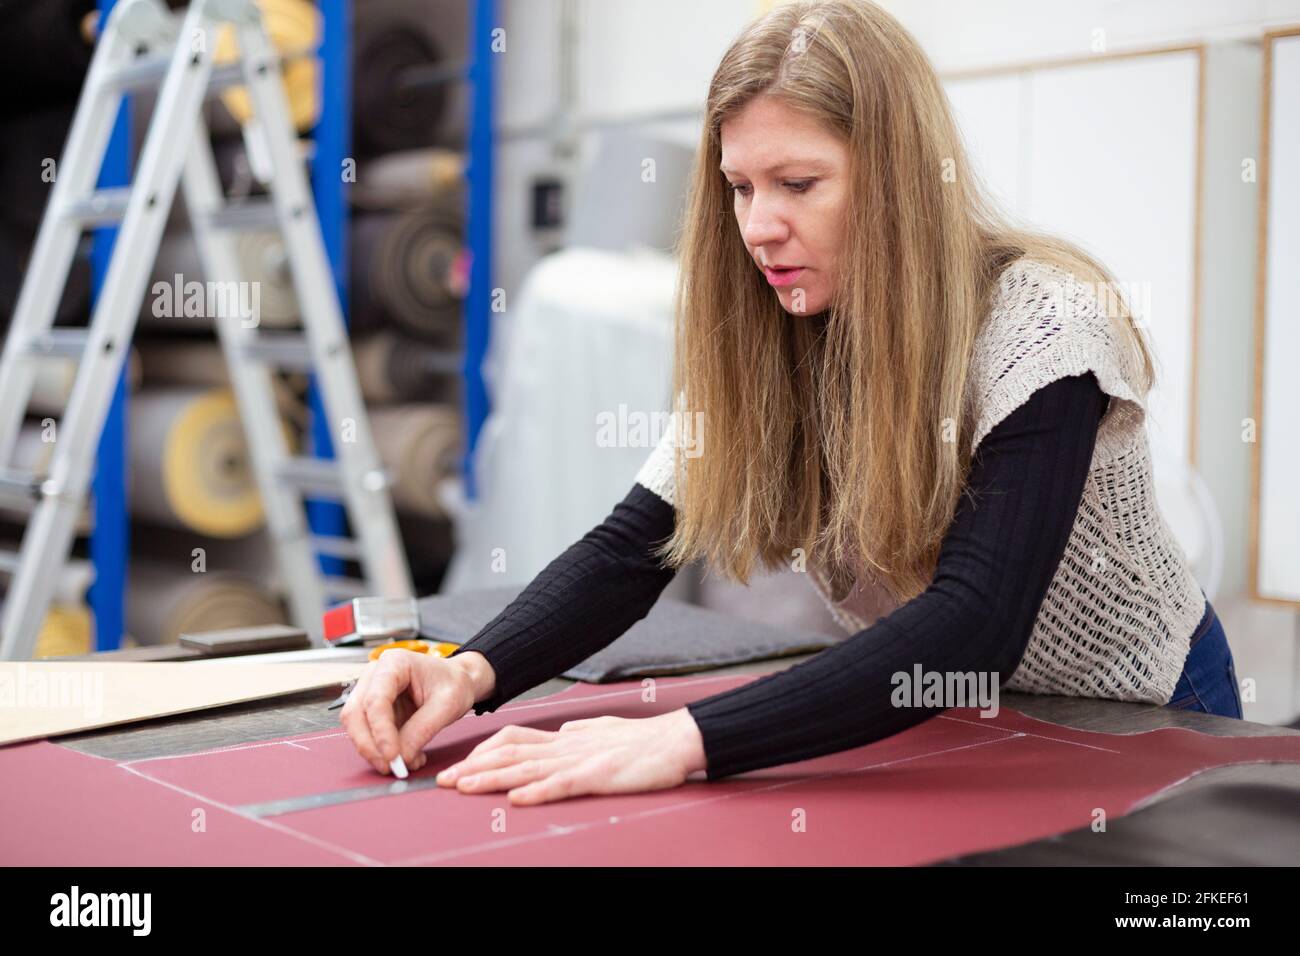 Une femme qui travaille prépare et marque un morceau de cuir dans un atelier de sellerie. Elle est blonde et caucasienne. Banque D'Images